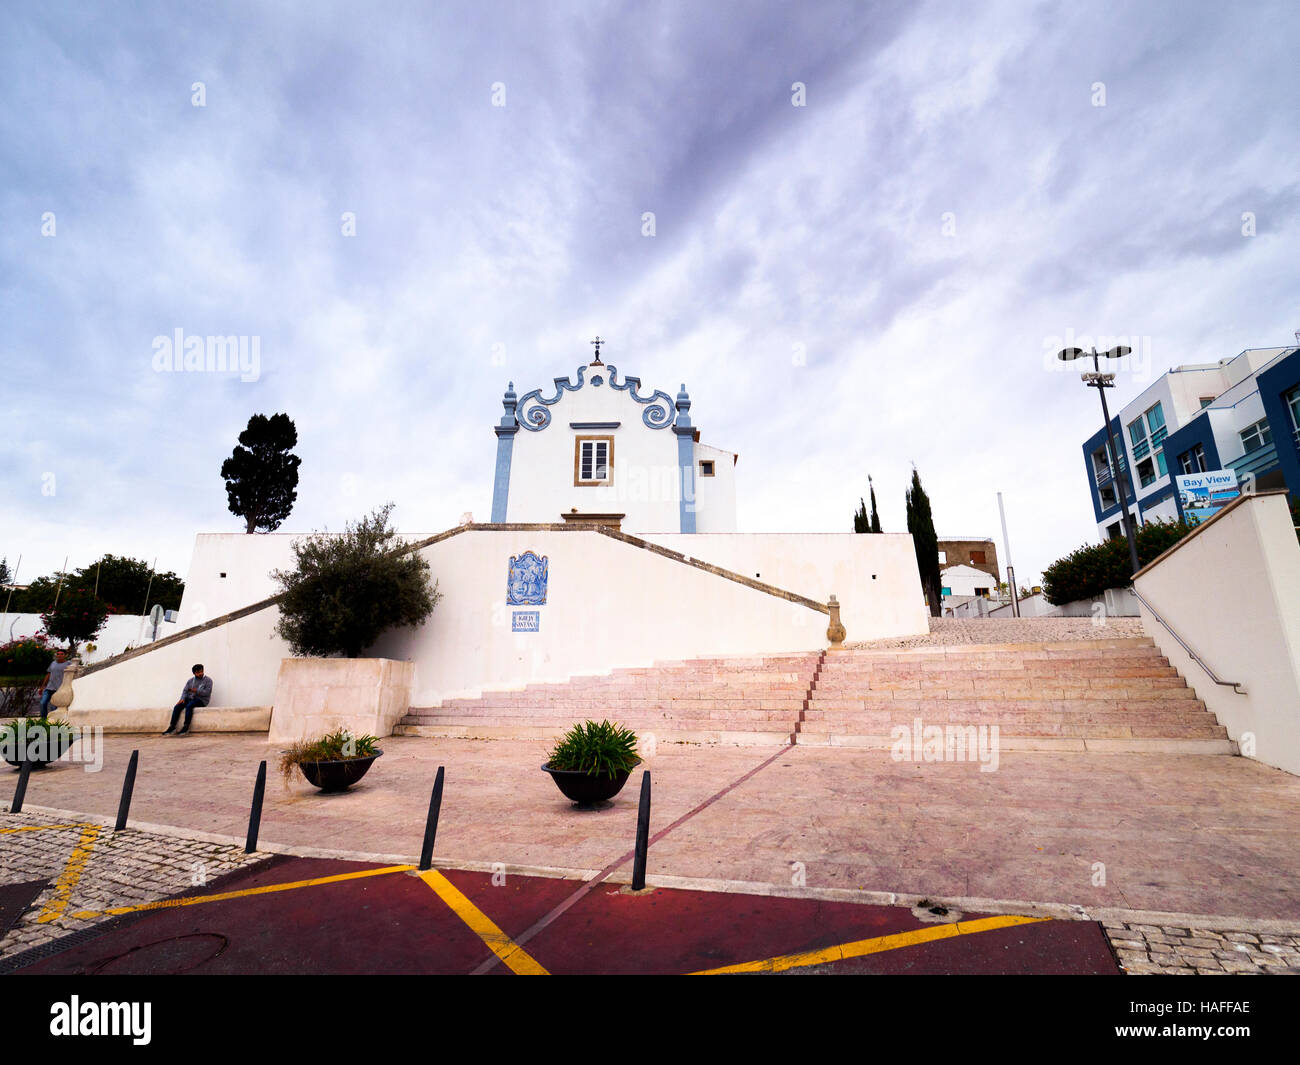 Igreja de Sant'Ana in Albufeira - Algarve region, Portugal Stock Photo